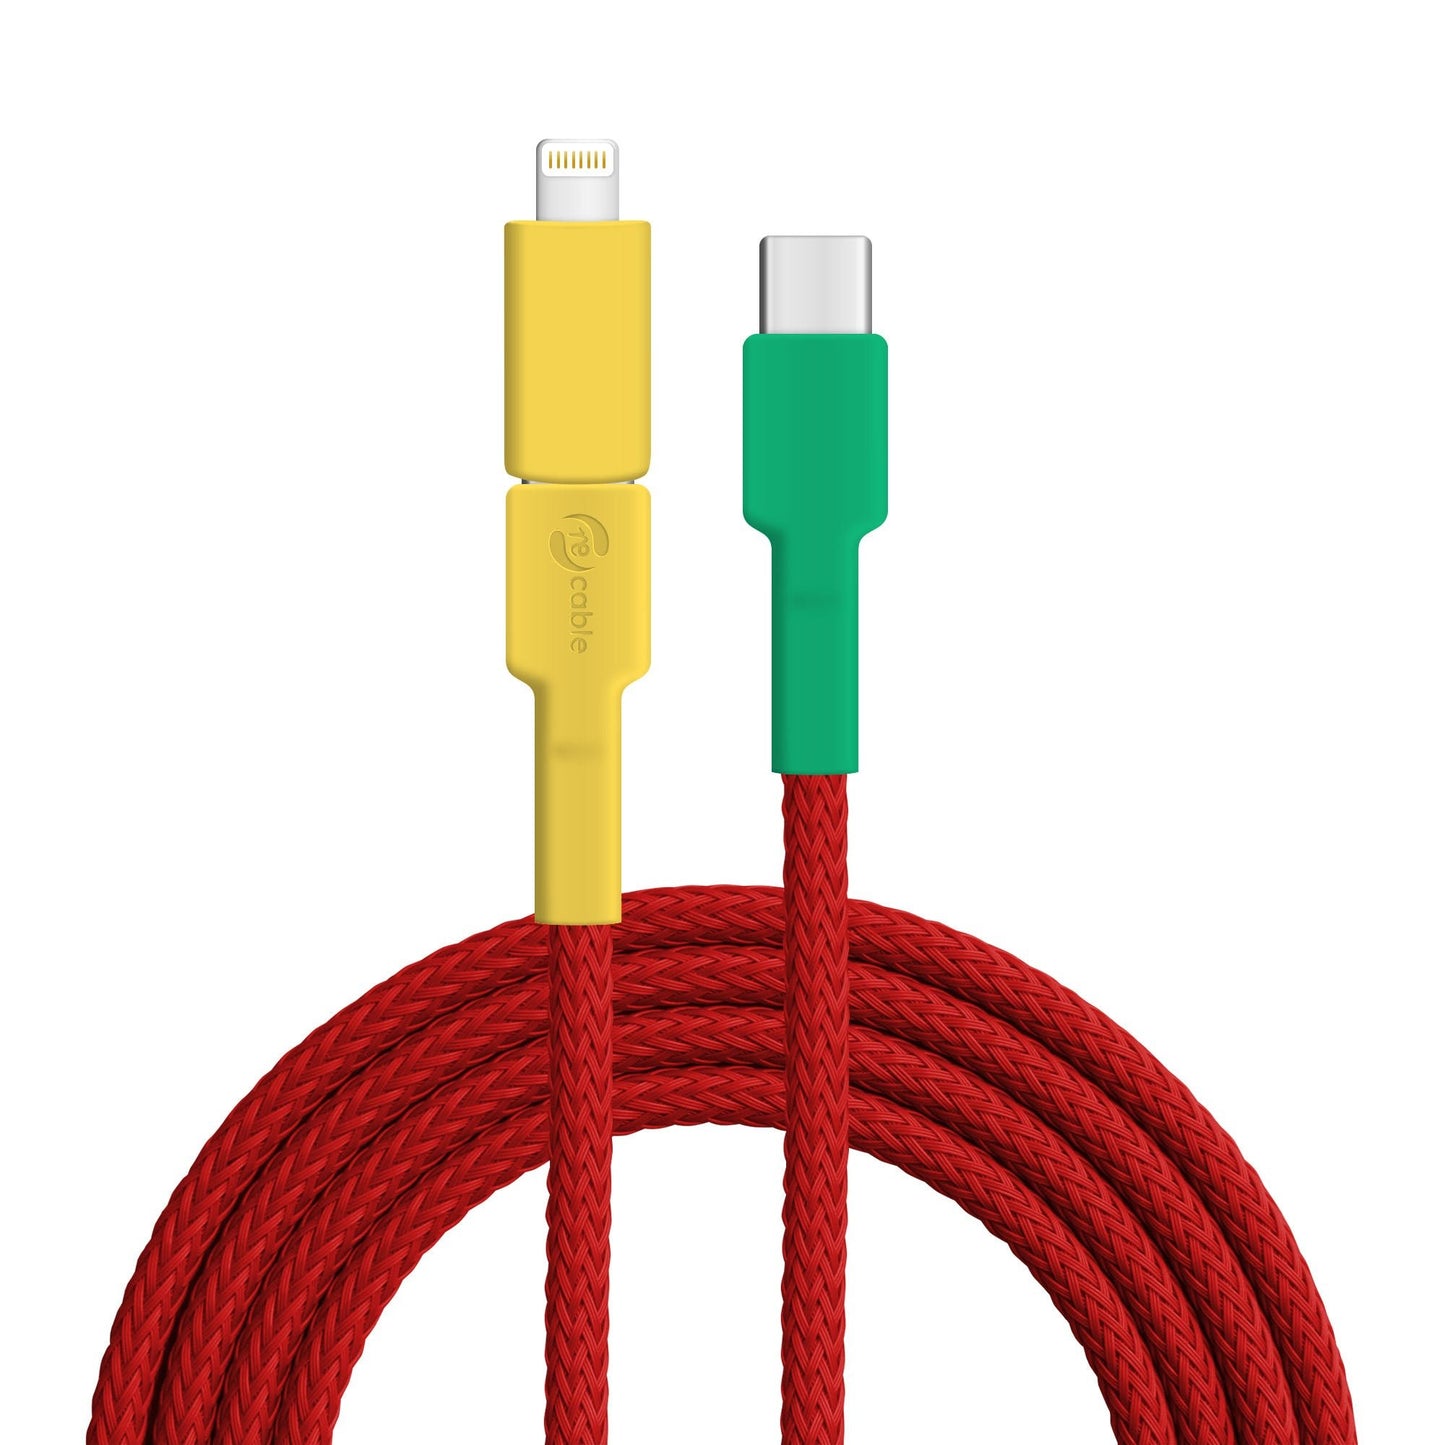 USB-Kabel, Design: Unzertrennliche, Anschlüsse: USB C auf USB C mit Lightning Adapter (verbunden)